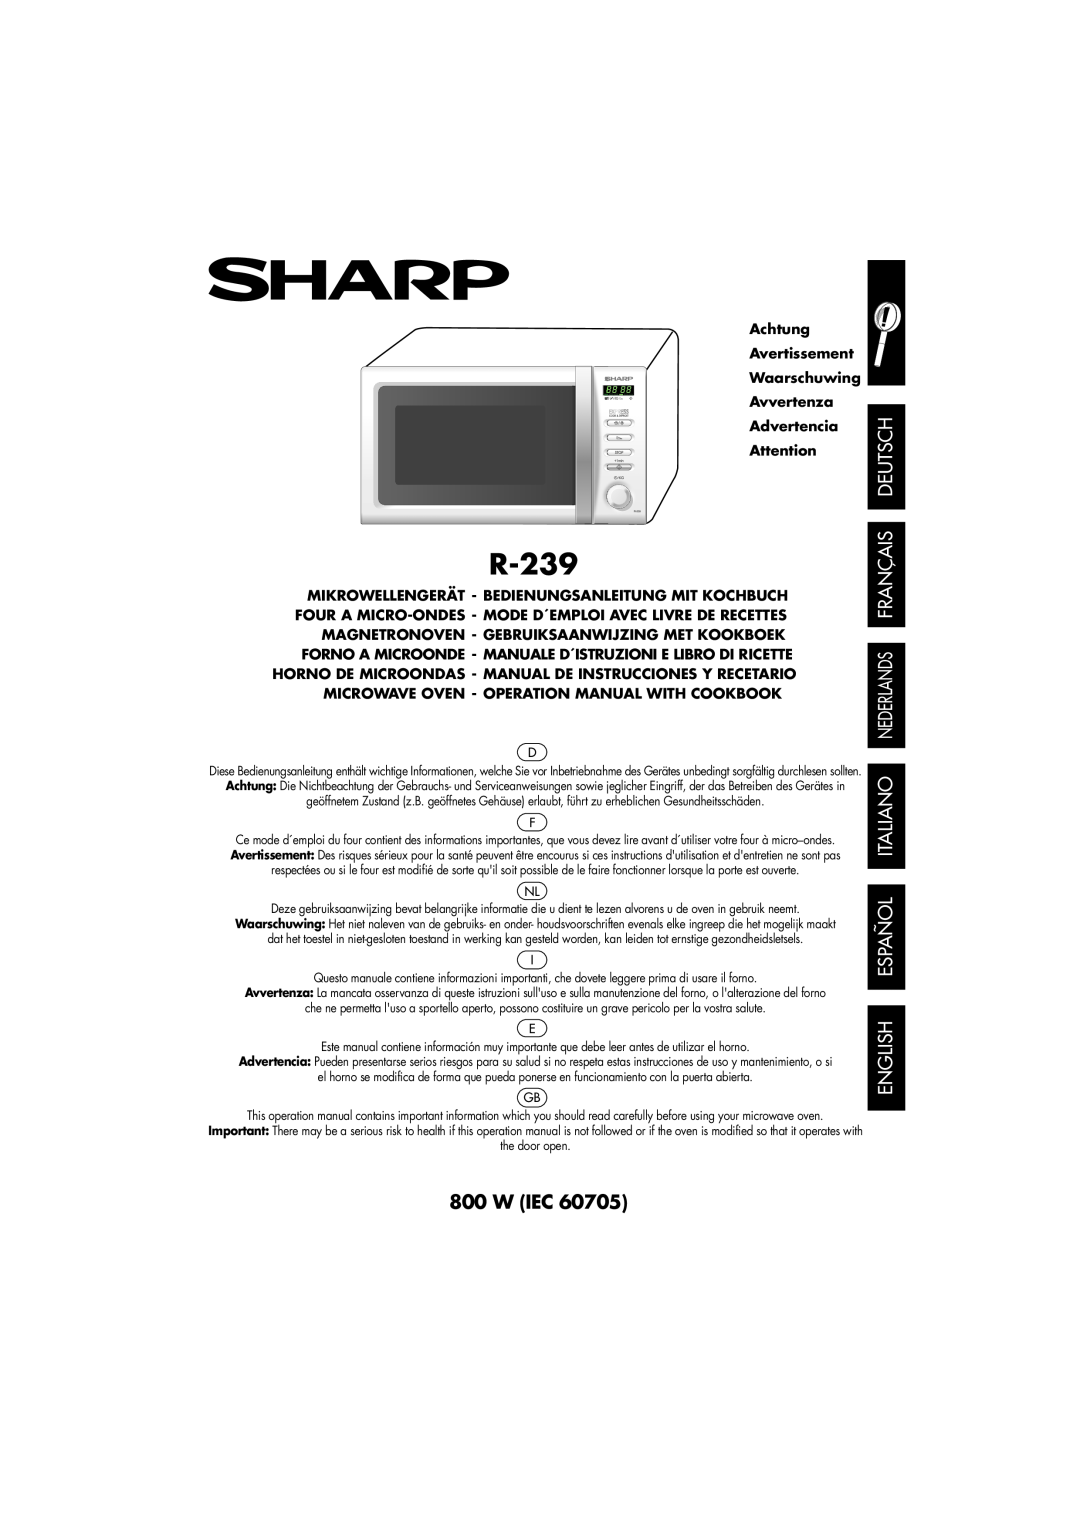 Sharp R-239 operation manual Deutsch, English Español Italiano Nederlands Français, W Iec 